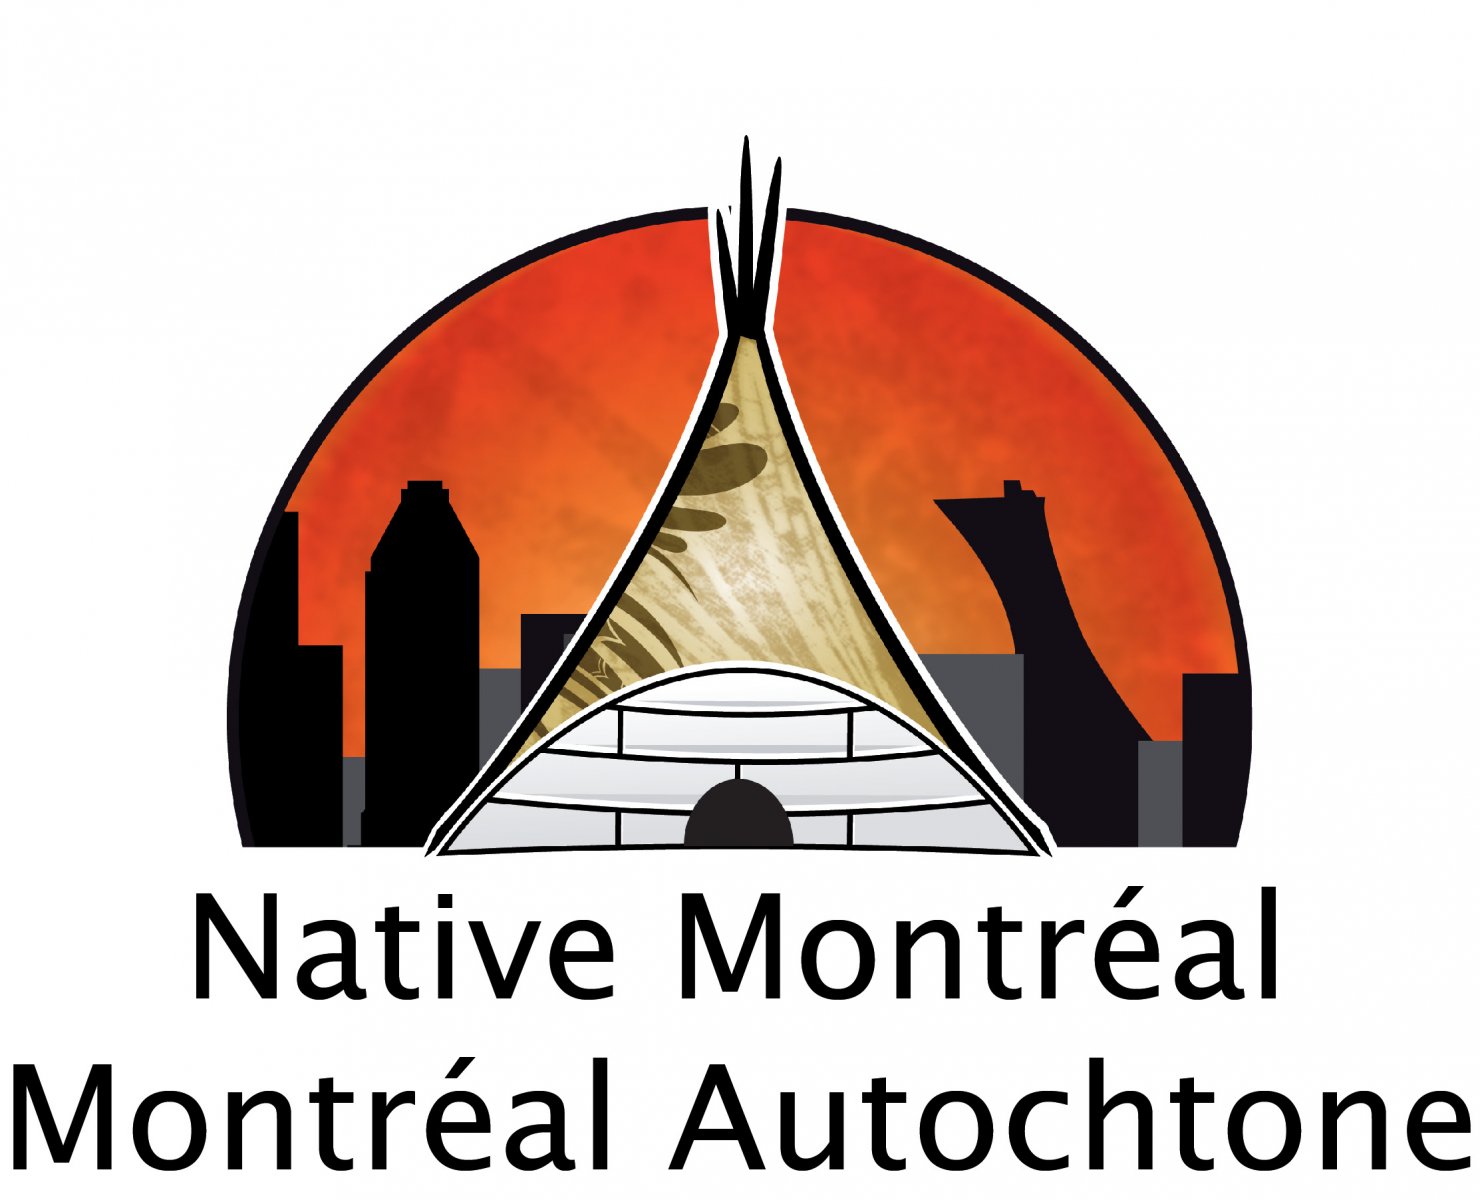 Montréal autochtone